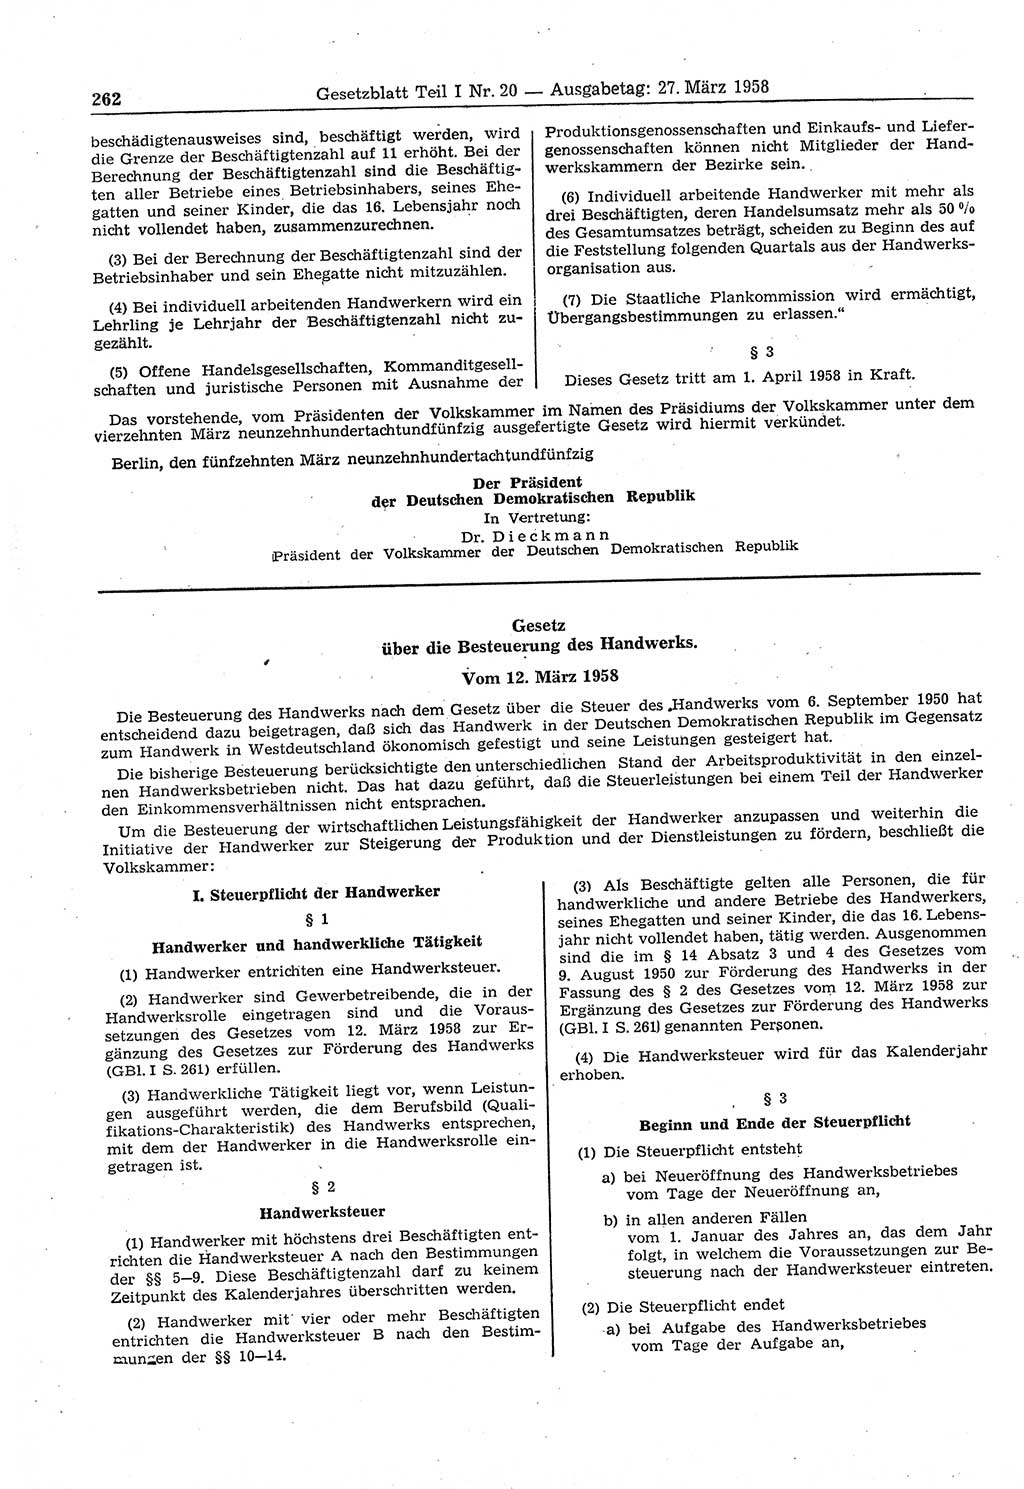 Gesetzblatt (GBl.) der Deutschen Demokratischen Republik (DDR) Teil Ⅰ 1958, Seite 262 (GBl. DDR Ⅰ 1958, S. 262)